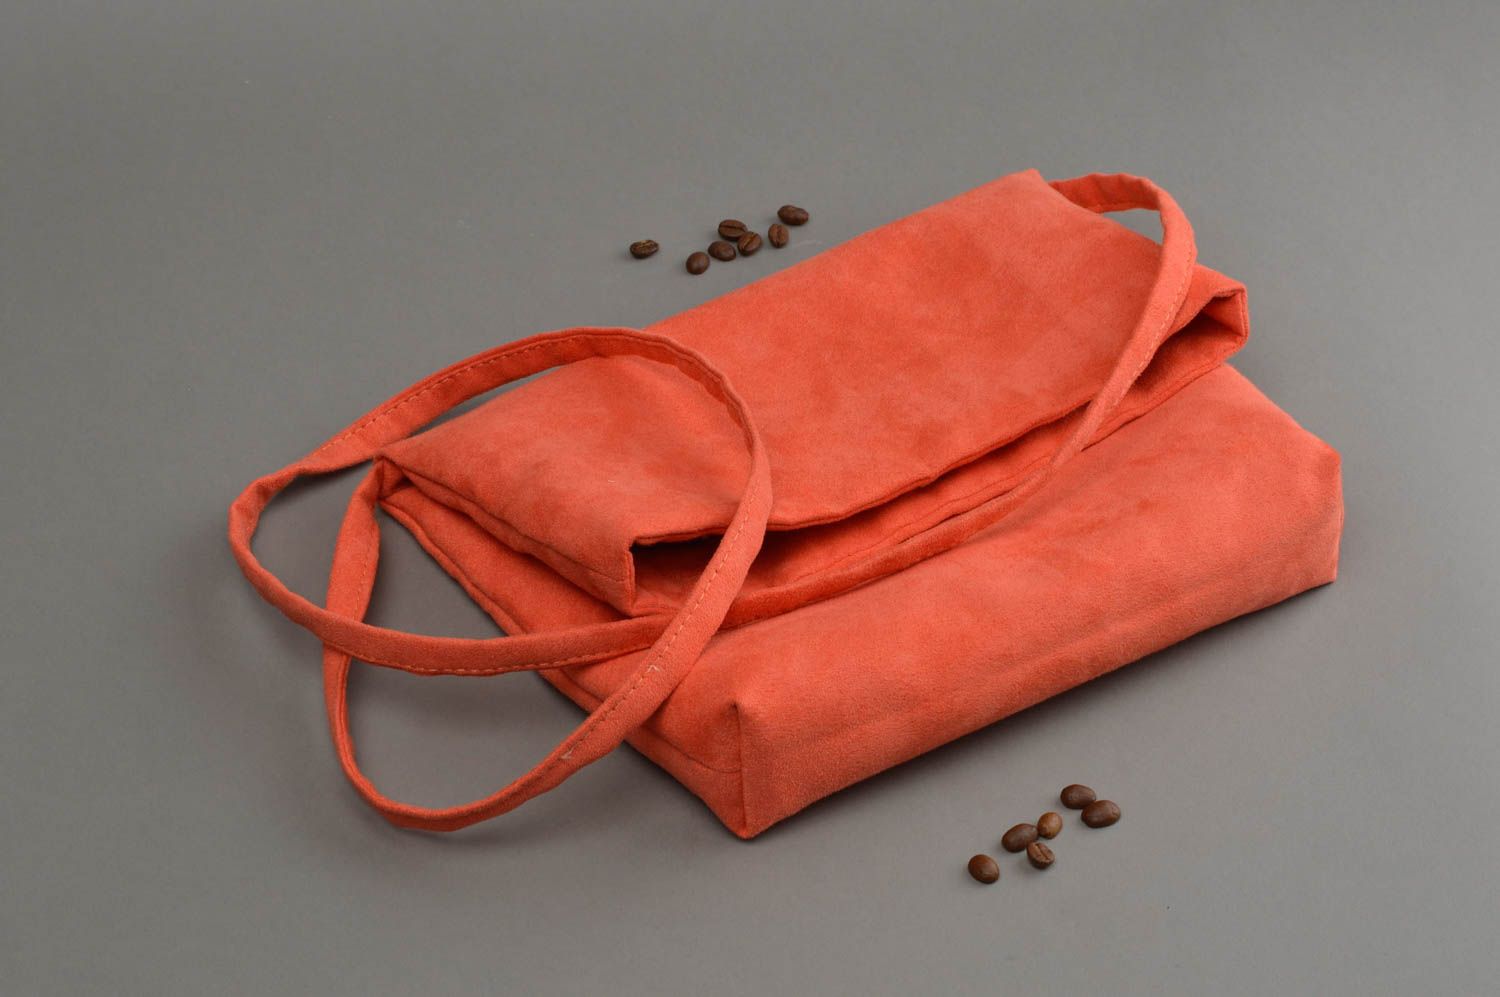 Suede bag handmade fabric purses red cloth handbag designer accessories photo 1